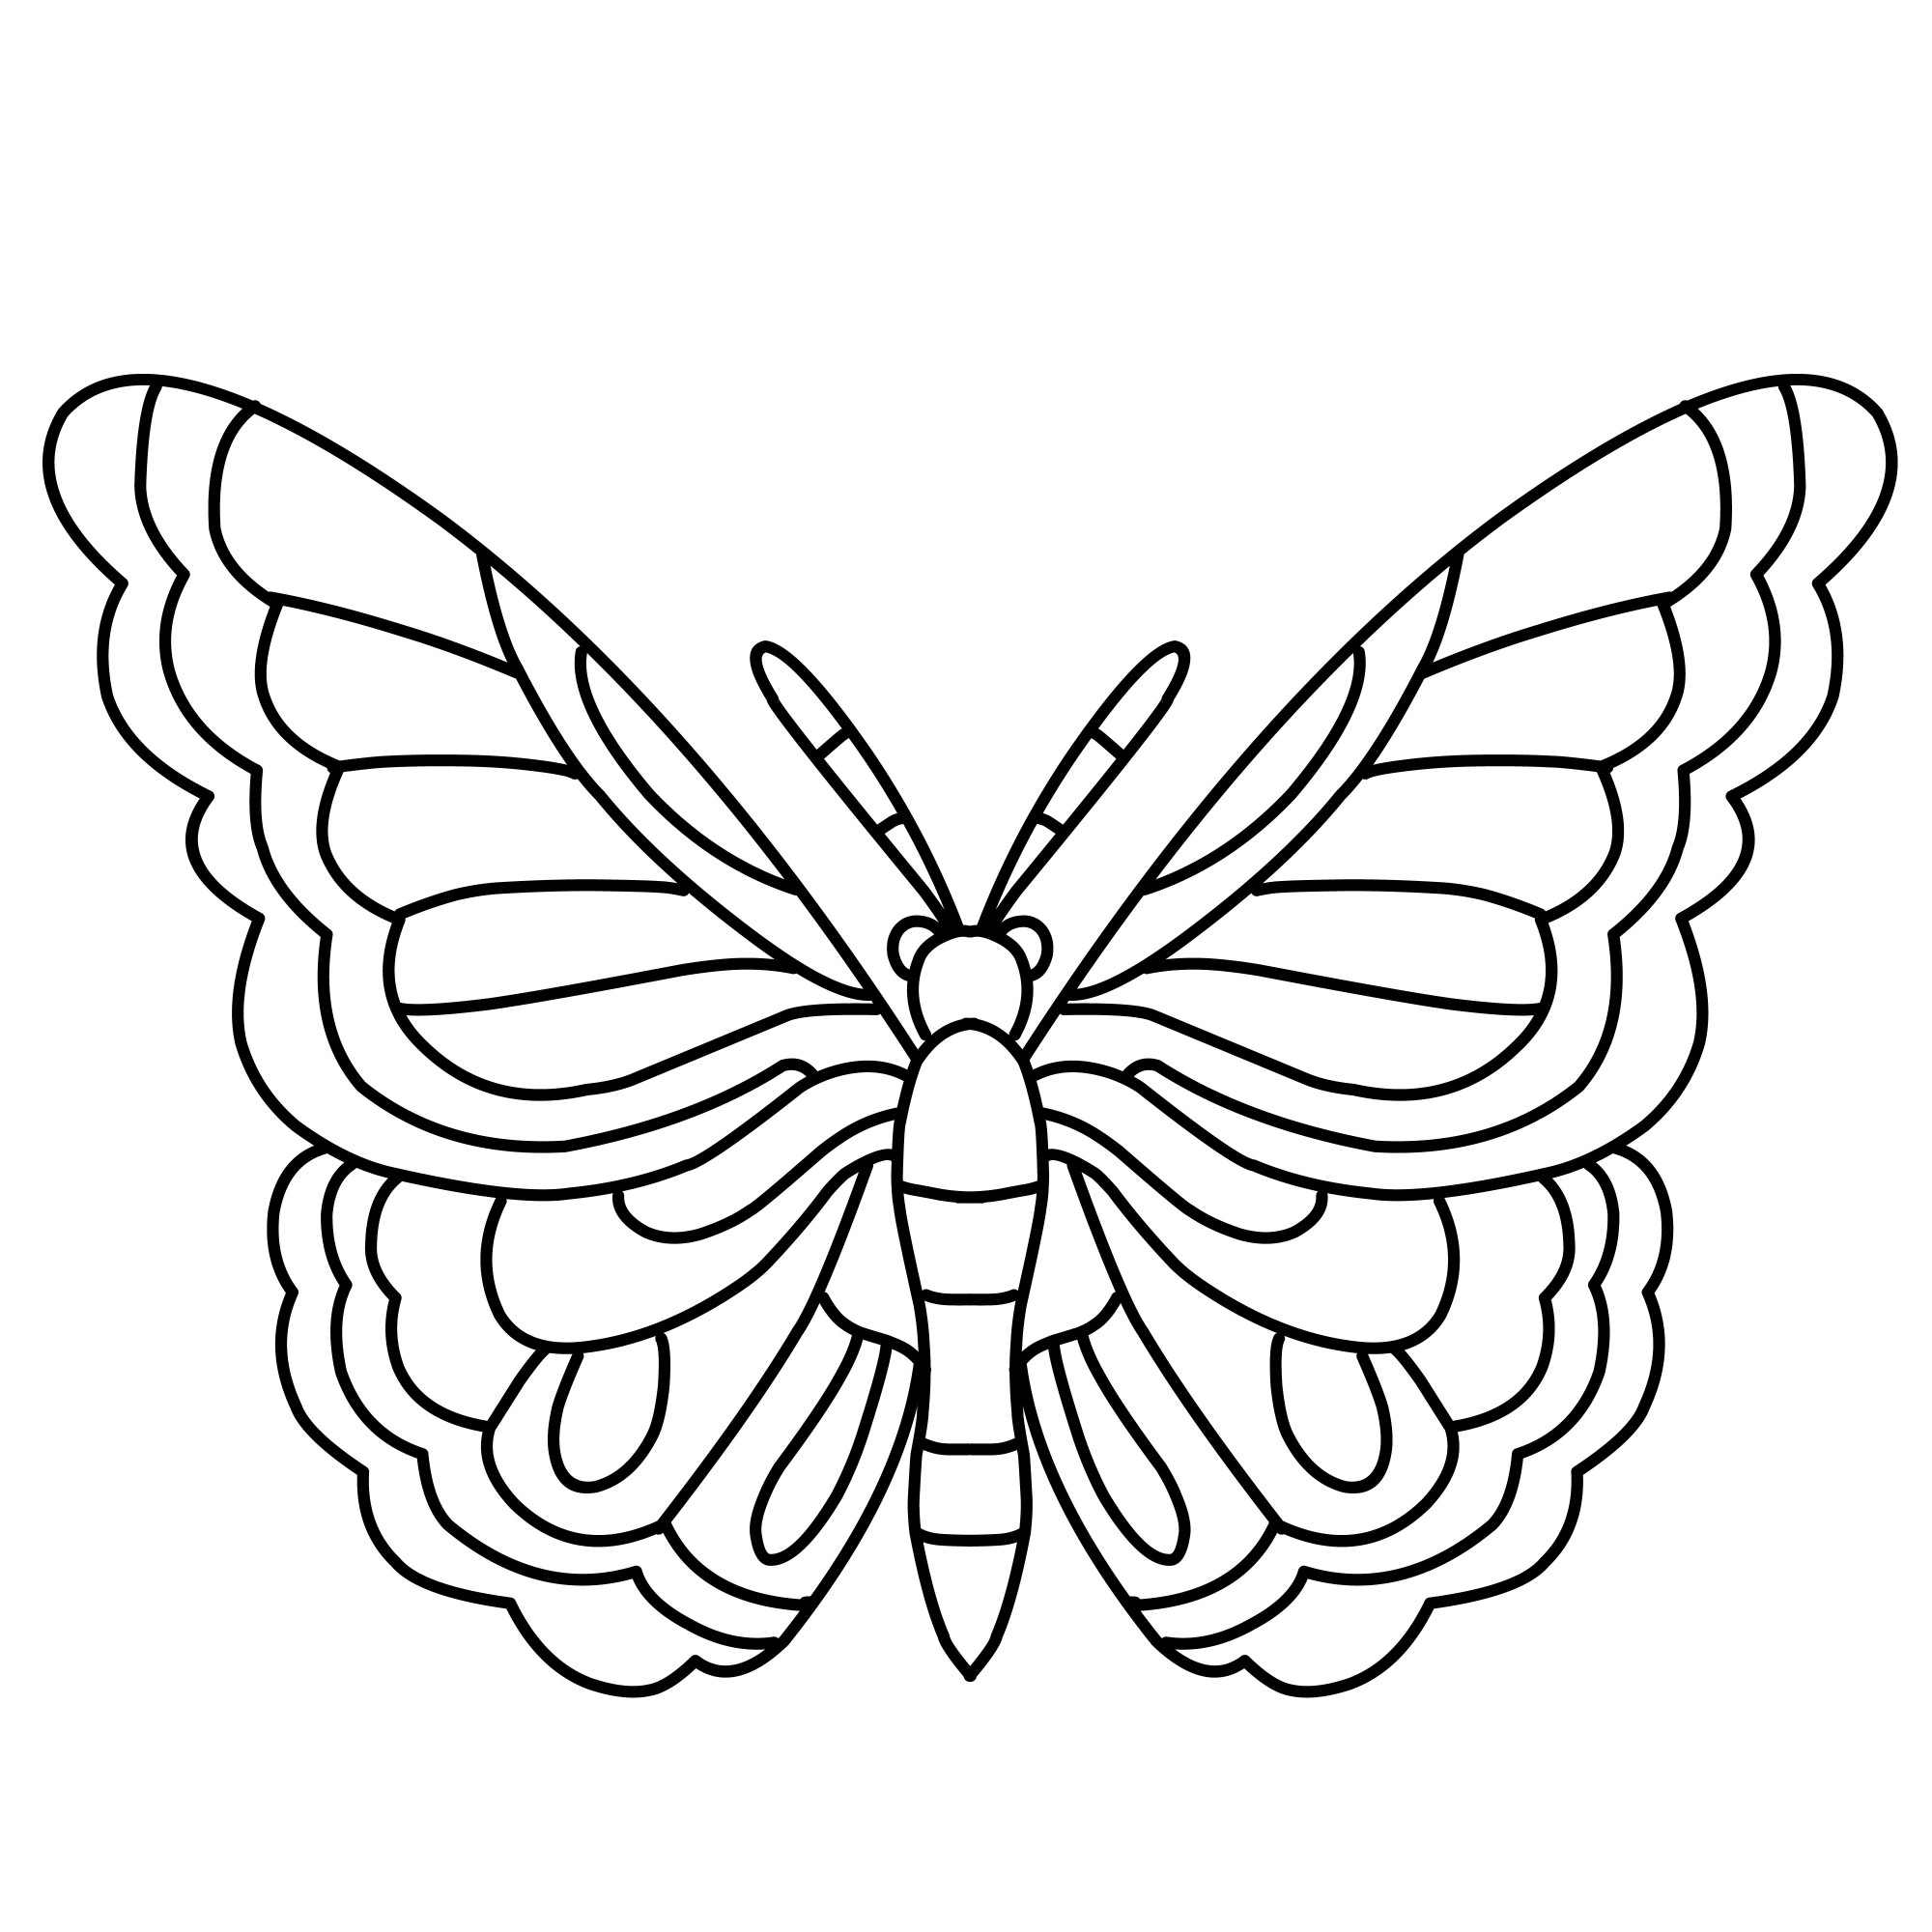 Раскраска для детей: симпатичные крылья бабочки